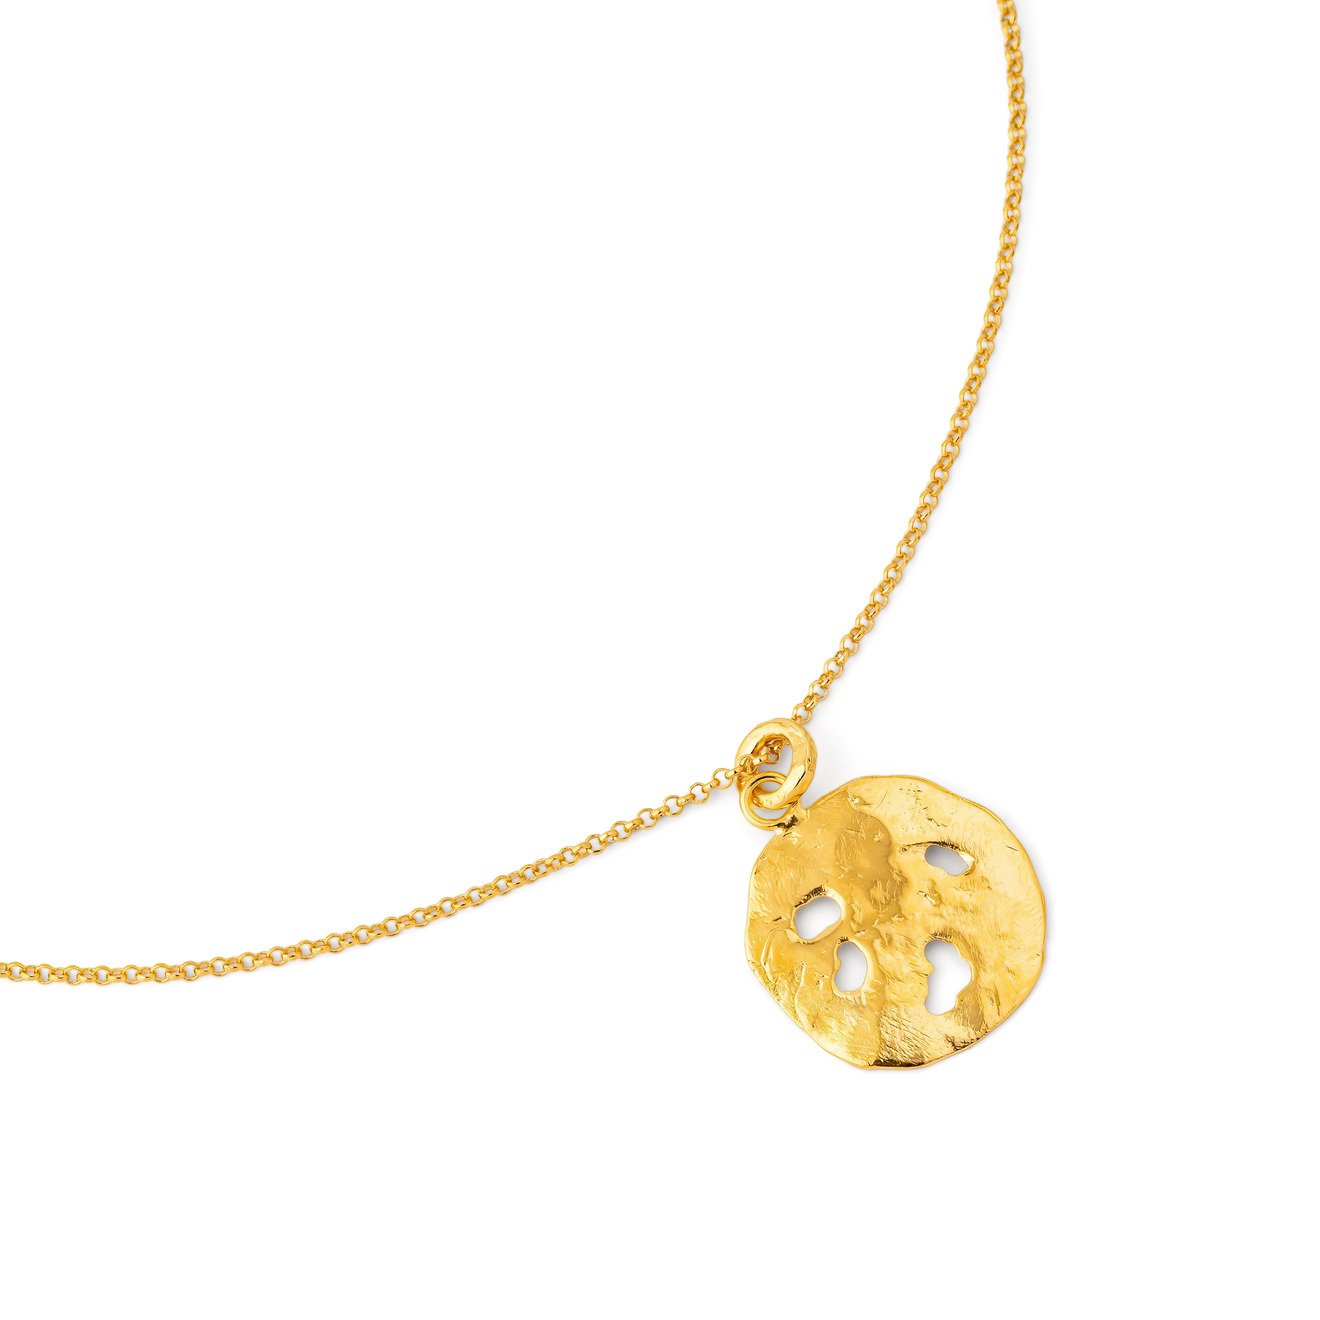 Sevenworlds Золотистая подвеска Pura Vida Medallion из бронзы aqua золотистая подвеска с белым сердем